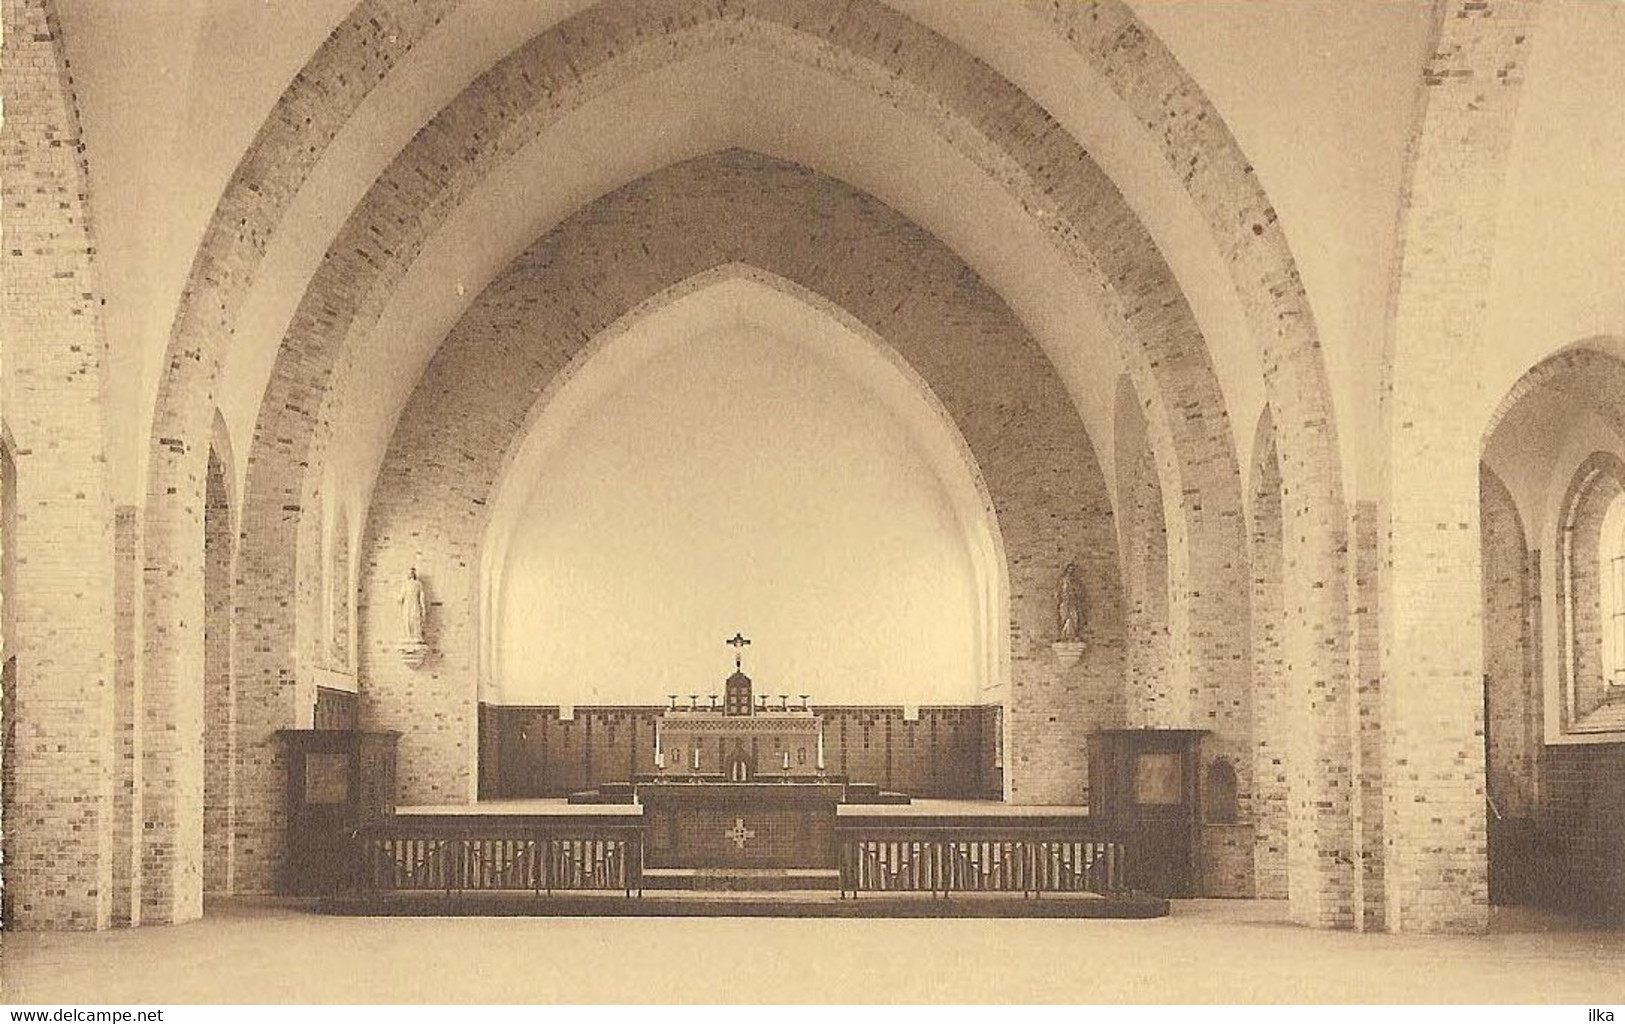 Koekelare/Couckelaere - DE MOKKER - Kerk - Binnenzicht - Arch. M. Dinnewet, Oostende. Uitgever R. De Wilde - Koekelare